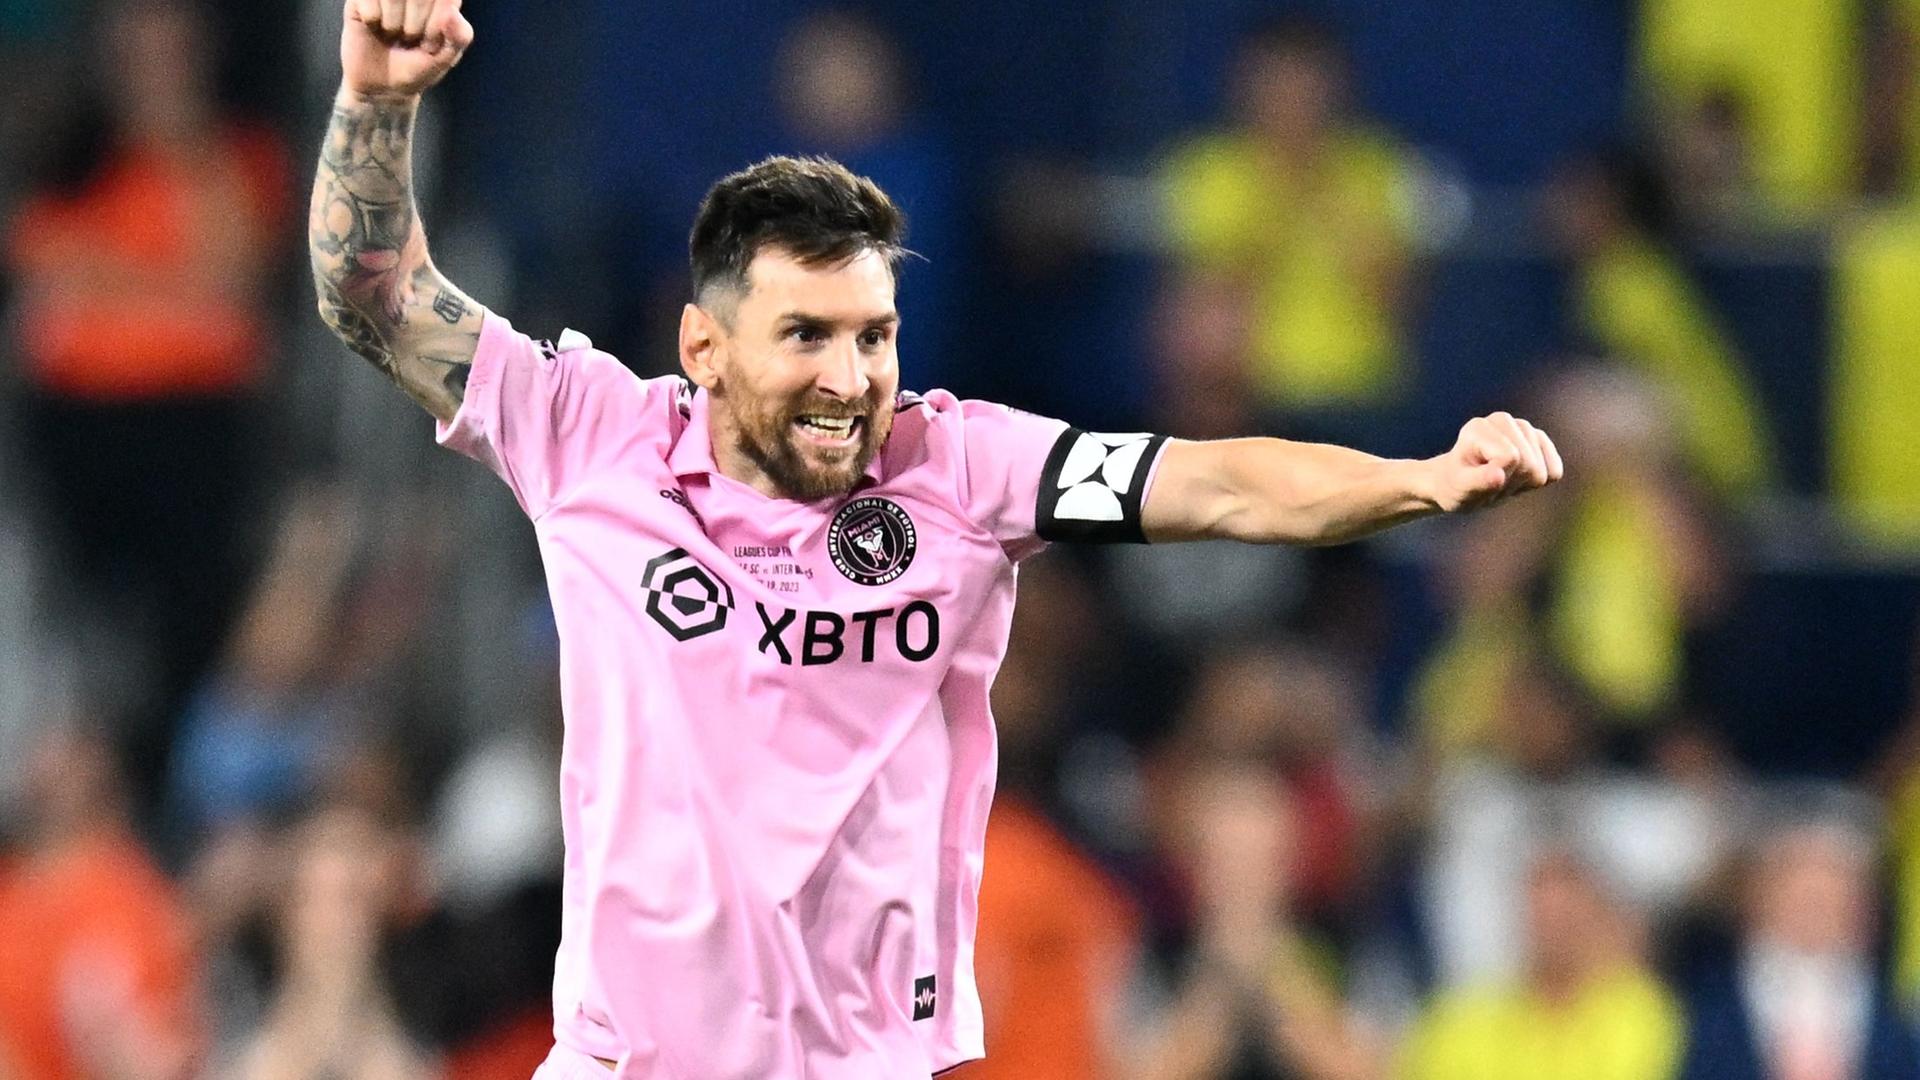 Lionel Messi feiert den Sieg seiner Mannschaft Inter Miami.